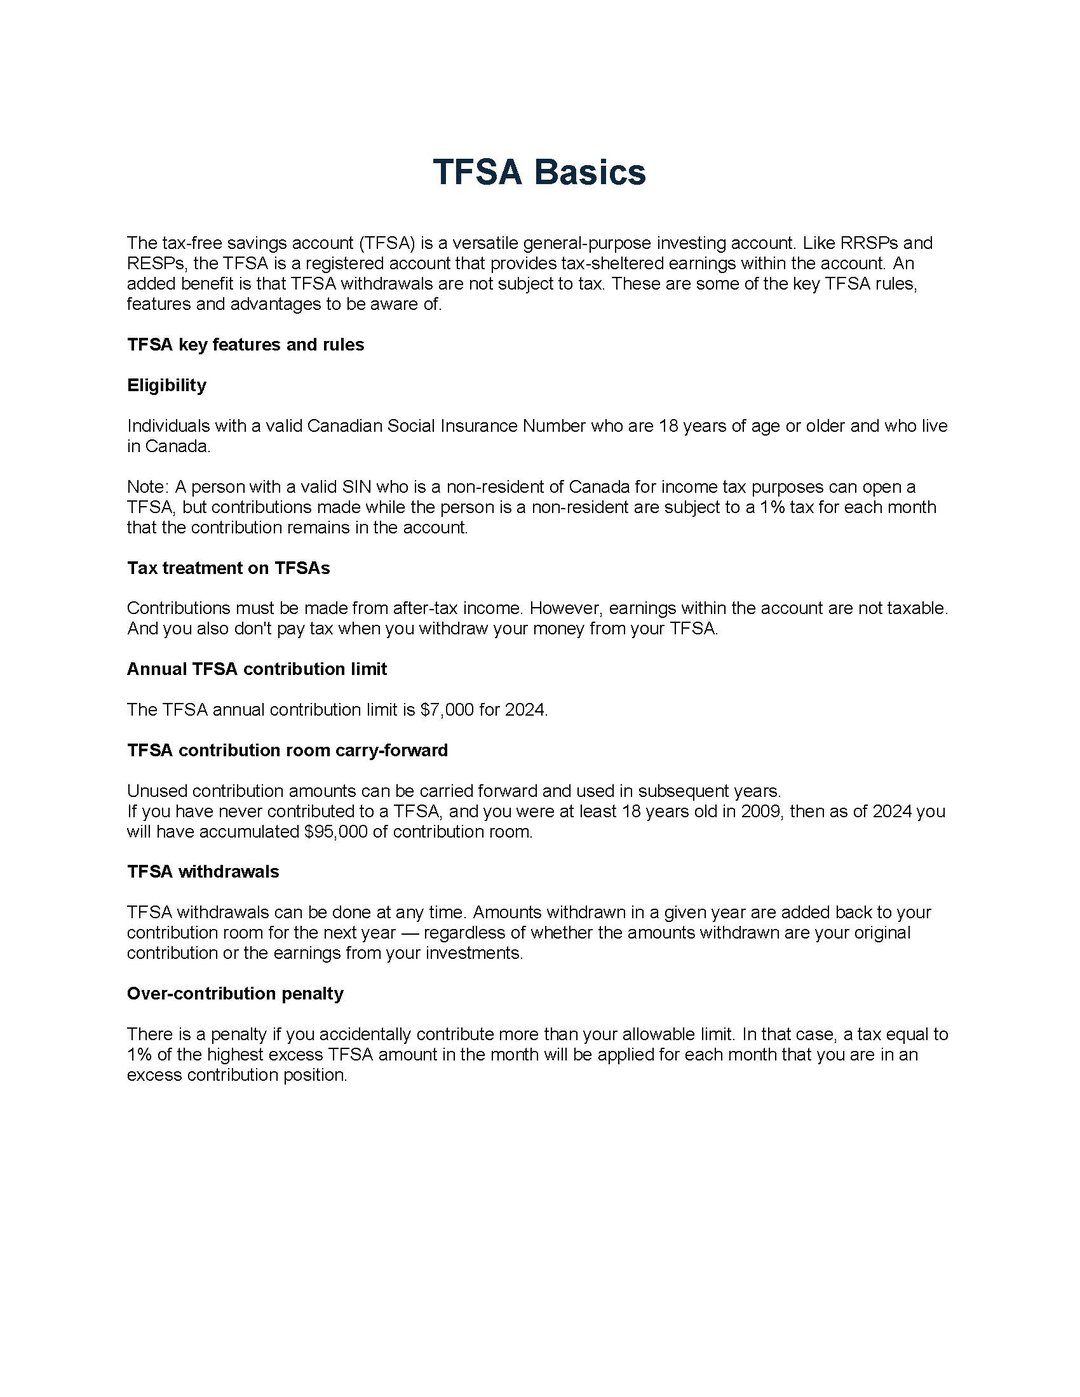 TFSA Basics_E_Page_1